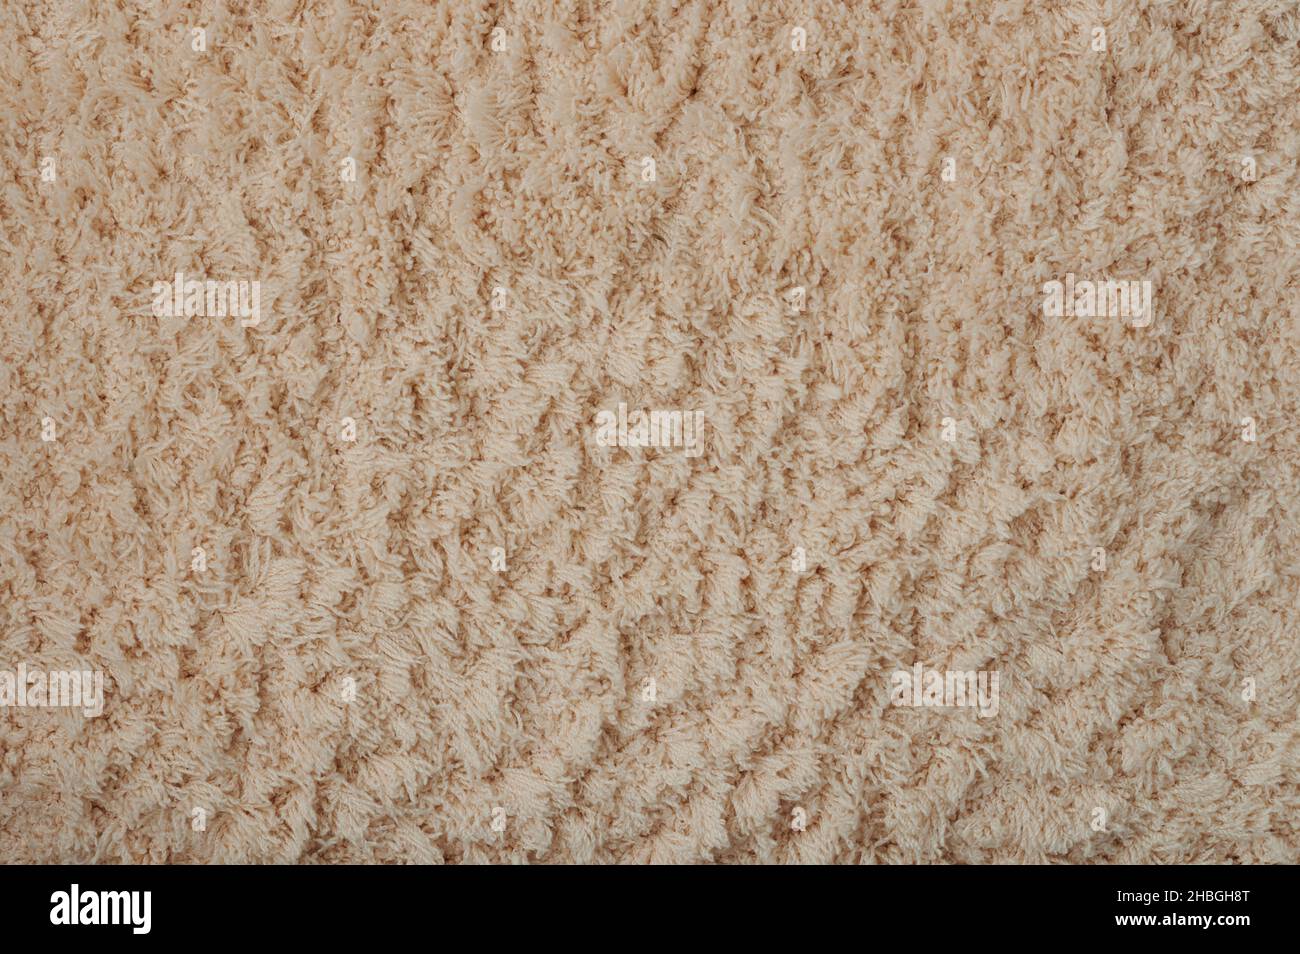 Textura de marrón suave alfombra suave macro vista de cerca Foto de stock